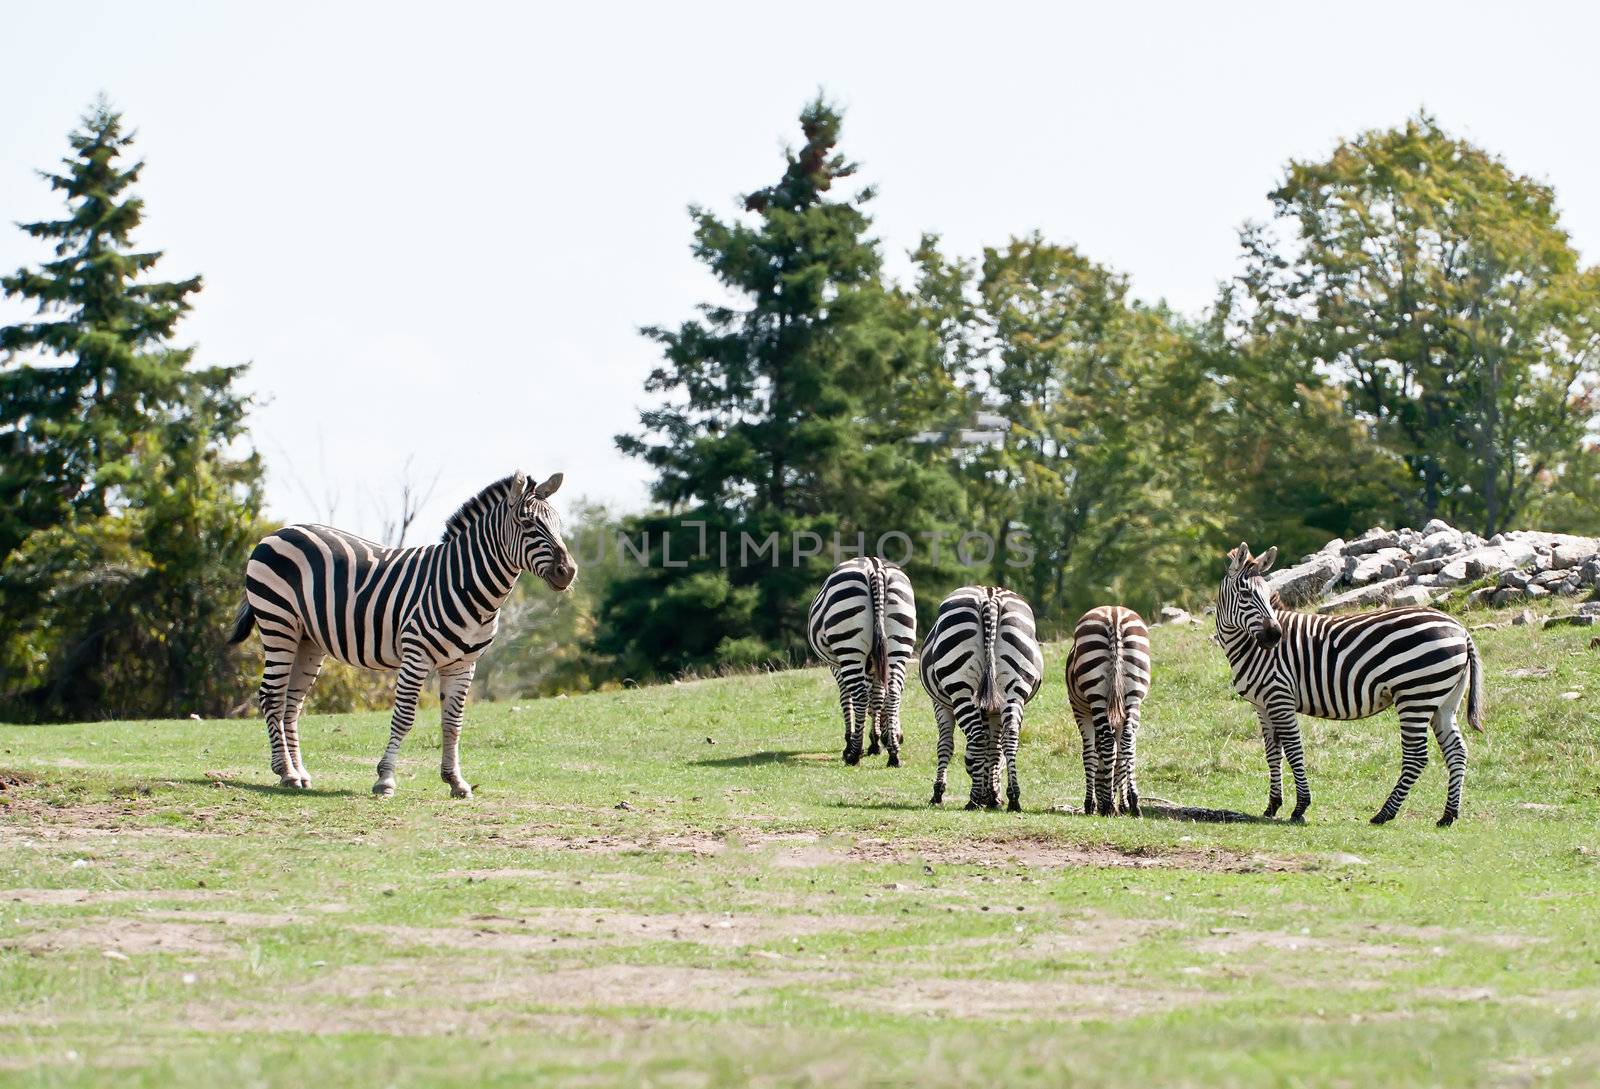 Few zebras on the grass field